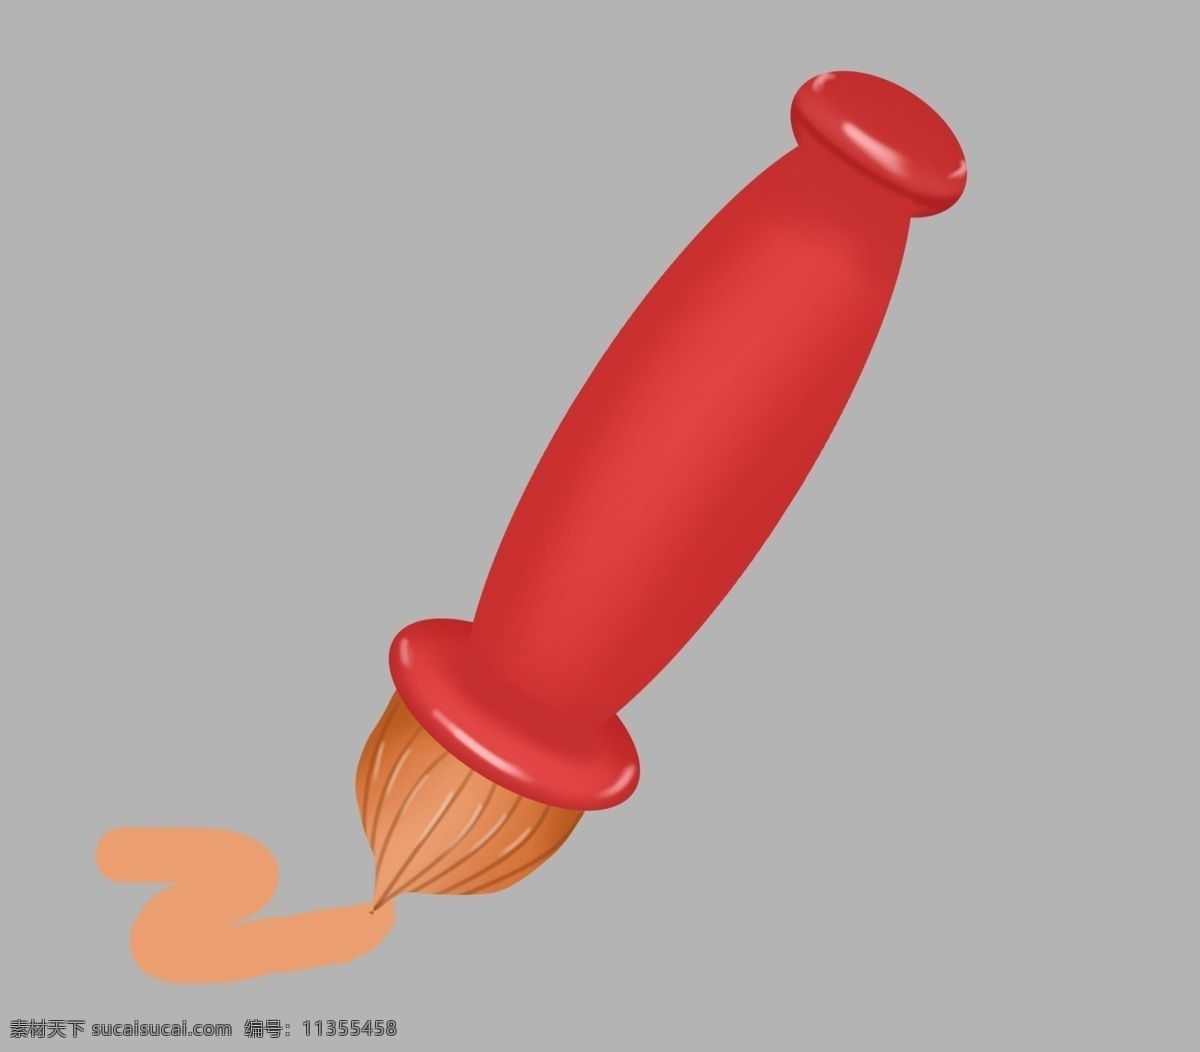 可爱 红色 画笔 插图 胖胖画笔 可爱的画笔 红色画笔 红色墨水 一支红色画笔 卡通画笔